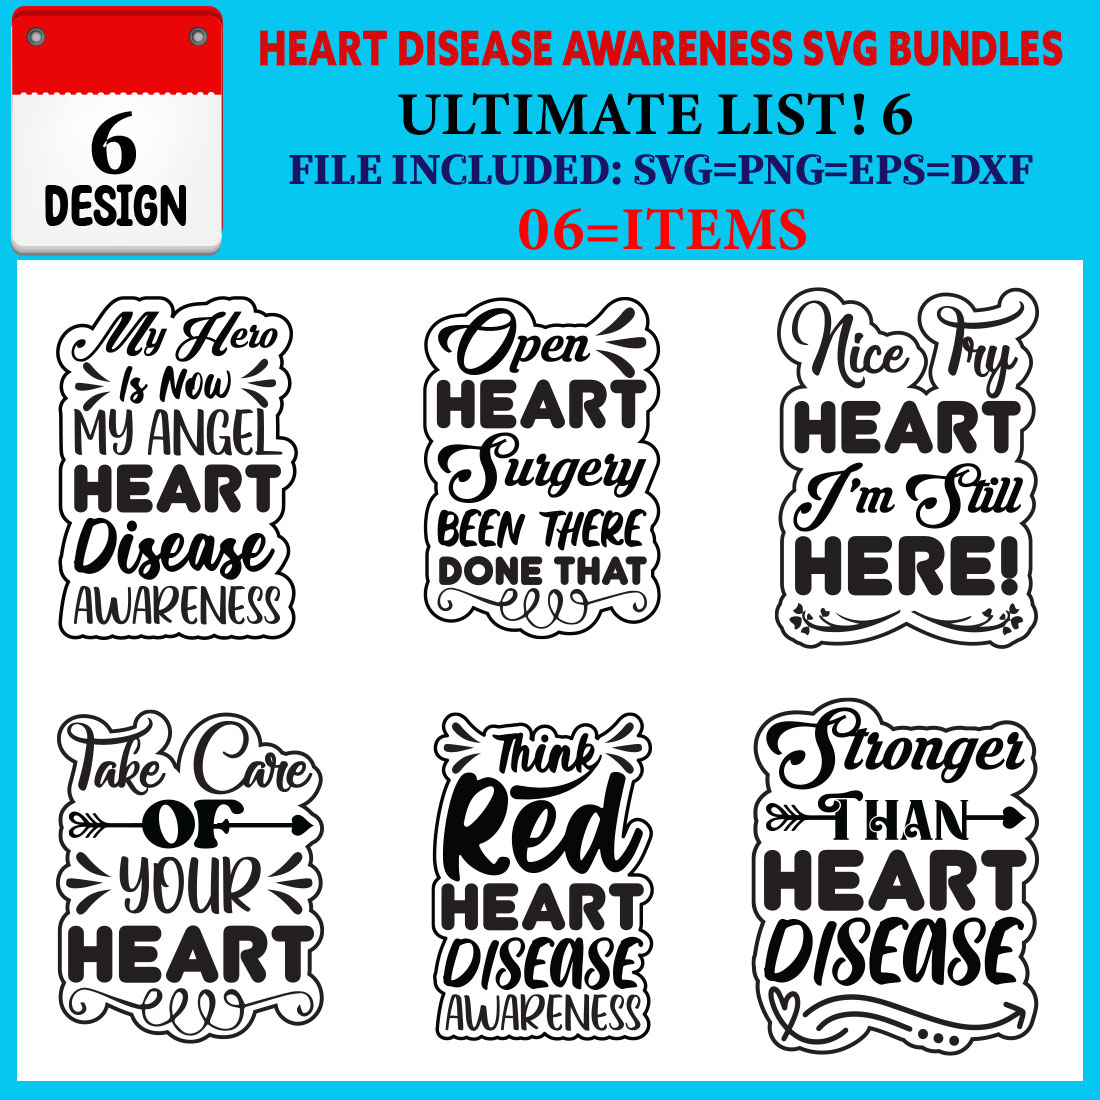 Heart Disease Awareness T-shirt Design Bundle Vol-03 cover image.